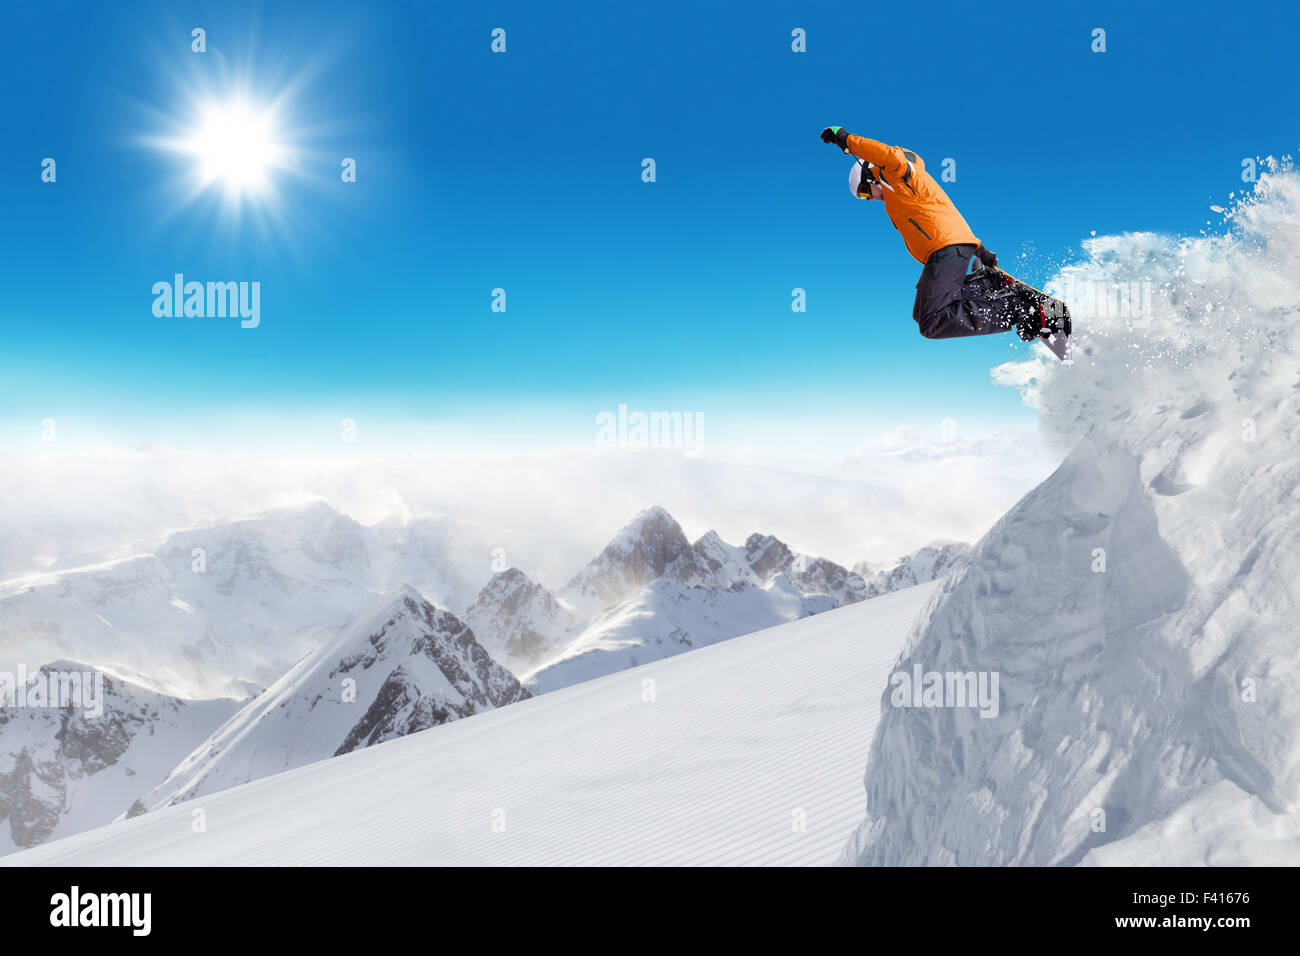 Jumping snowboarder at jump Stock Photo